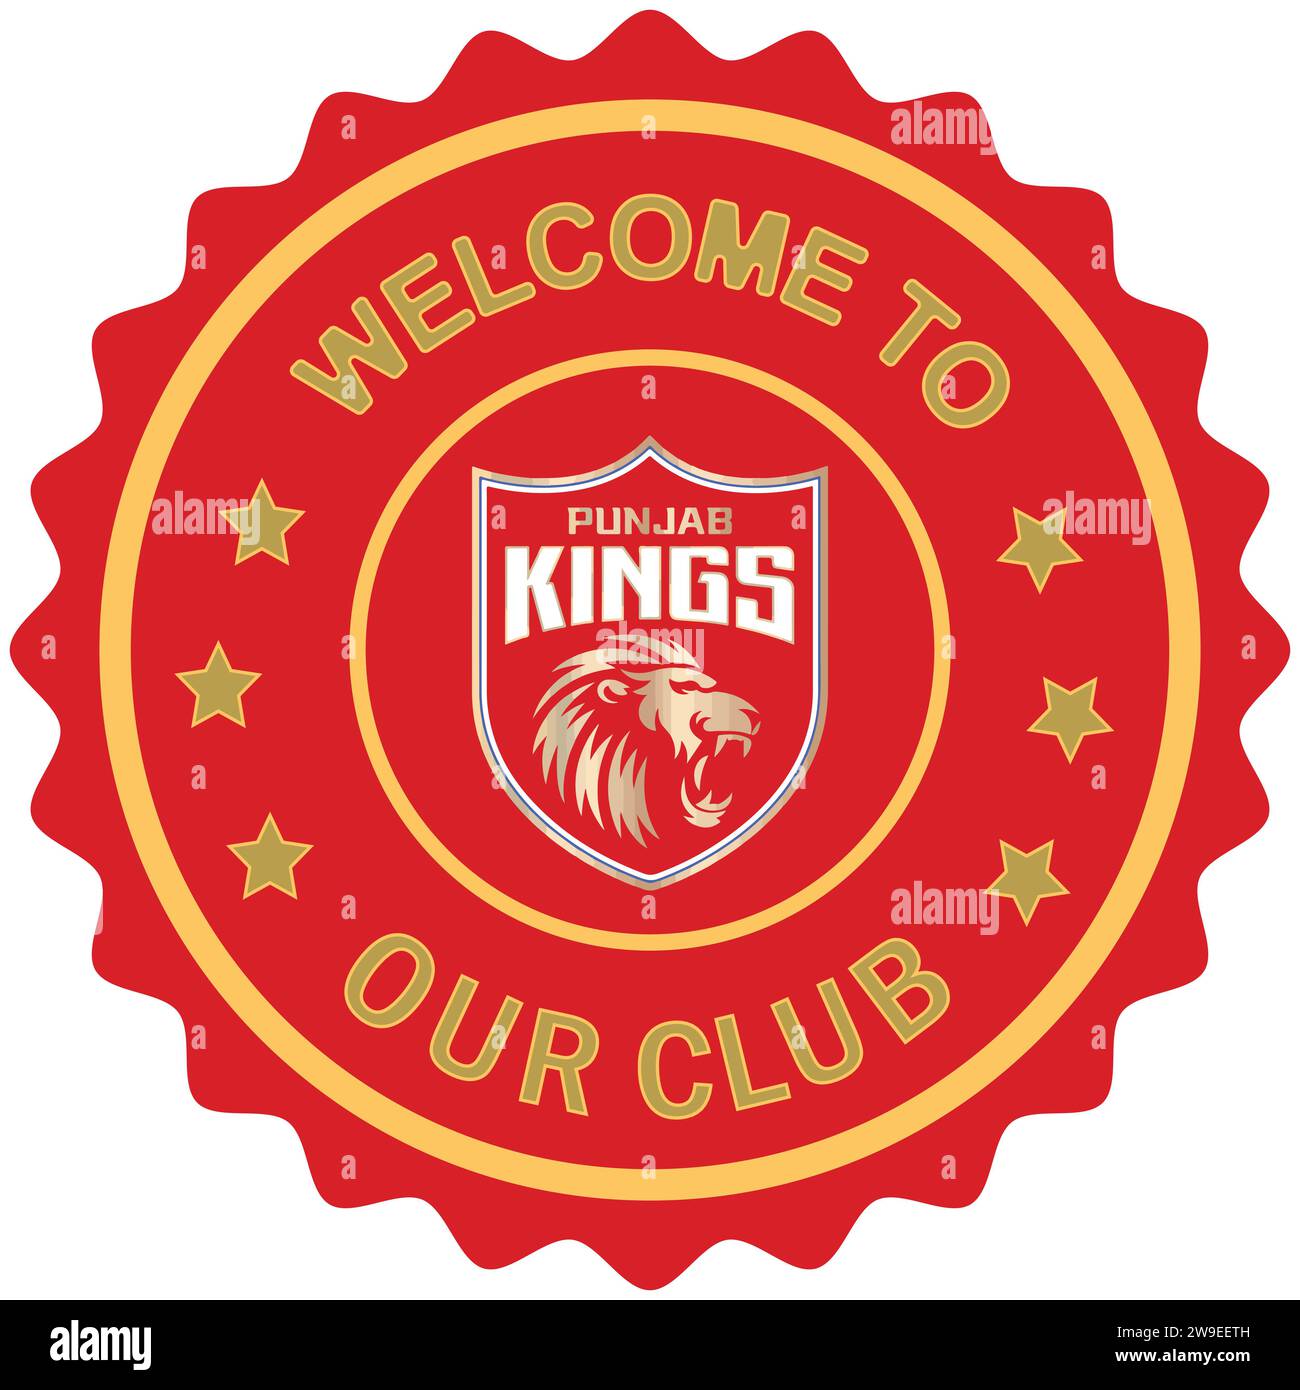 Bienvenue à Punjab Kings notre club timbre coloré et sceau, club de cricket professionnel indien, illustration vectorielle Abstract image éditable Illustration de Vecteur